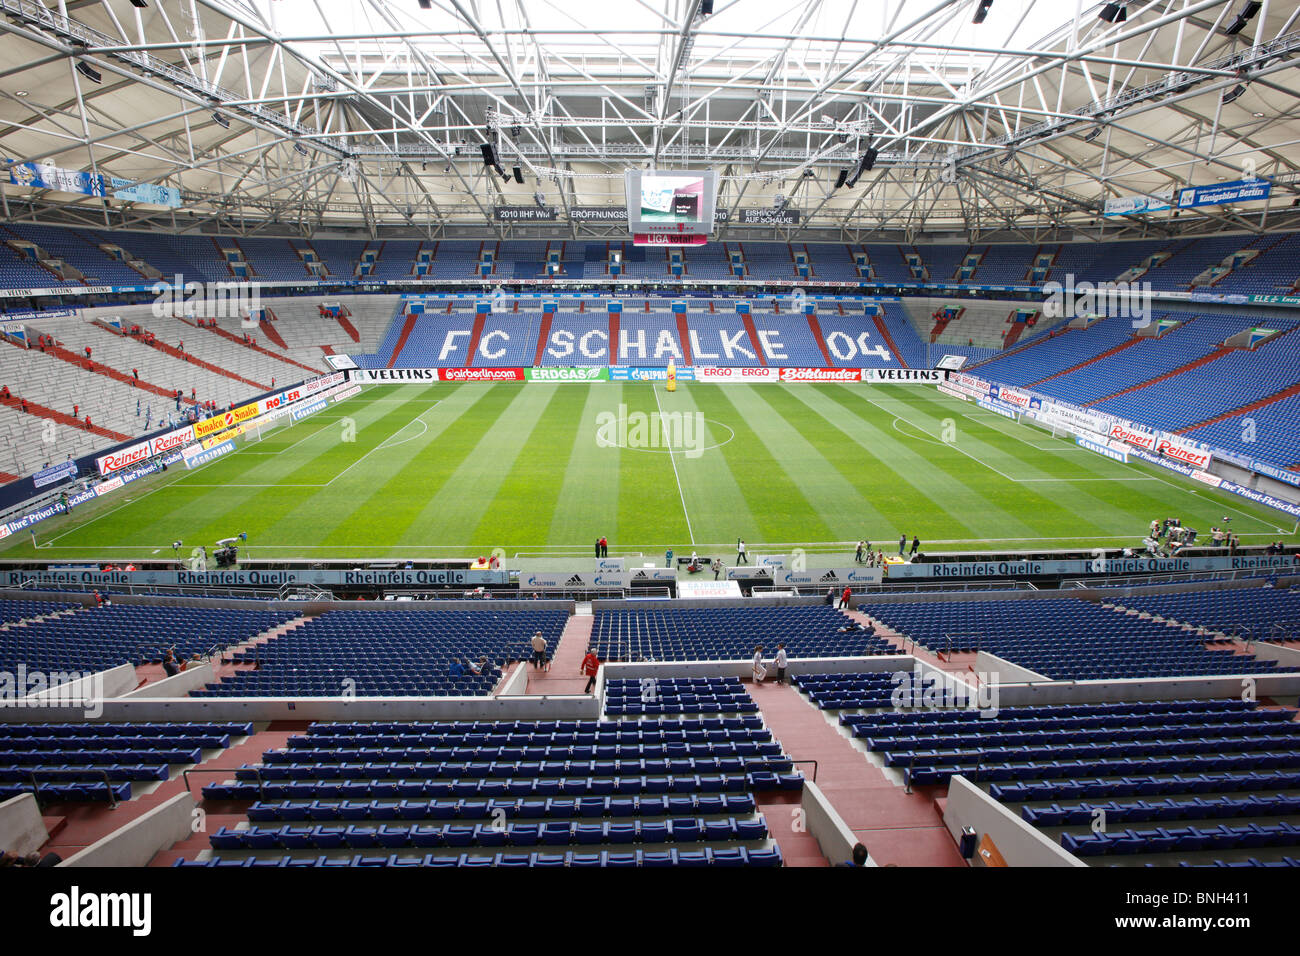 Areana Veltins, big Sports Stadium, hogar de la primera división de la Bundesliga alemana, Schalke 04, club Gelsenkrichen, Alemania. Foto de stock